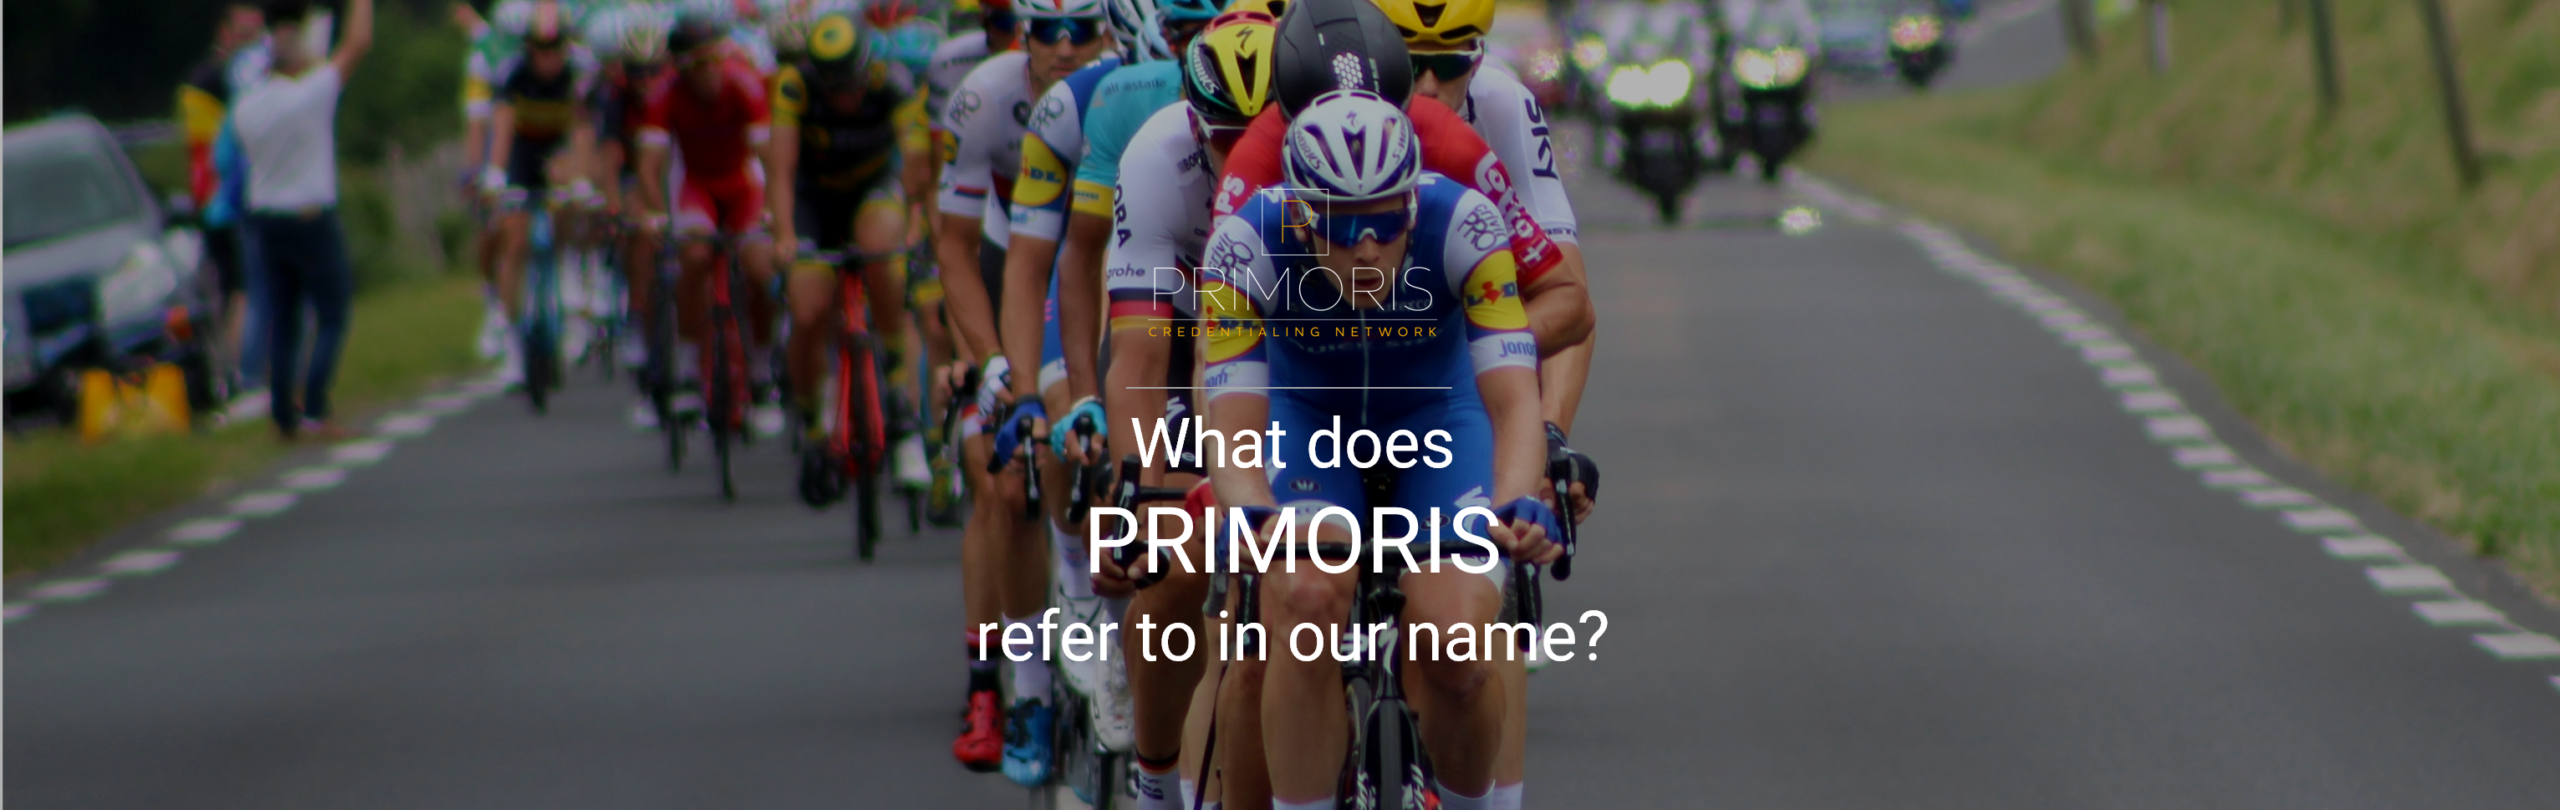 Primoris Credentialing Network